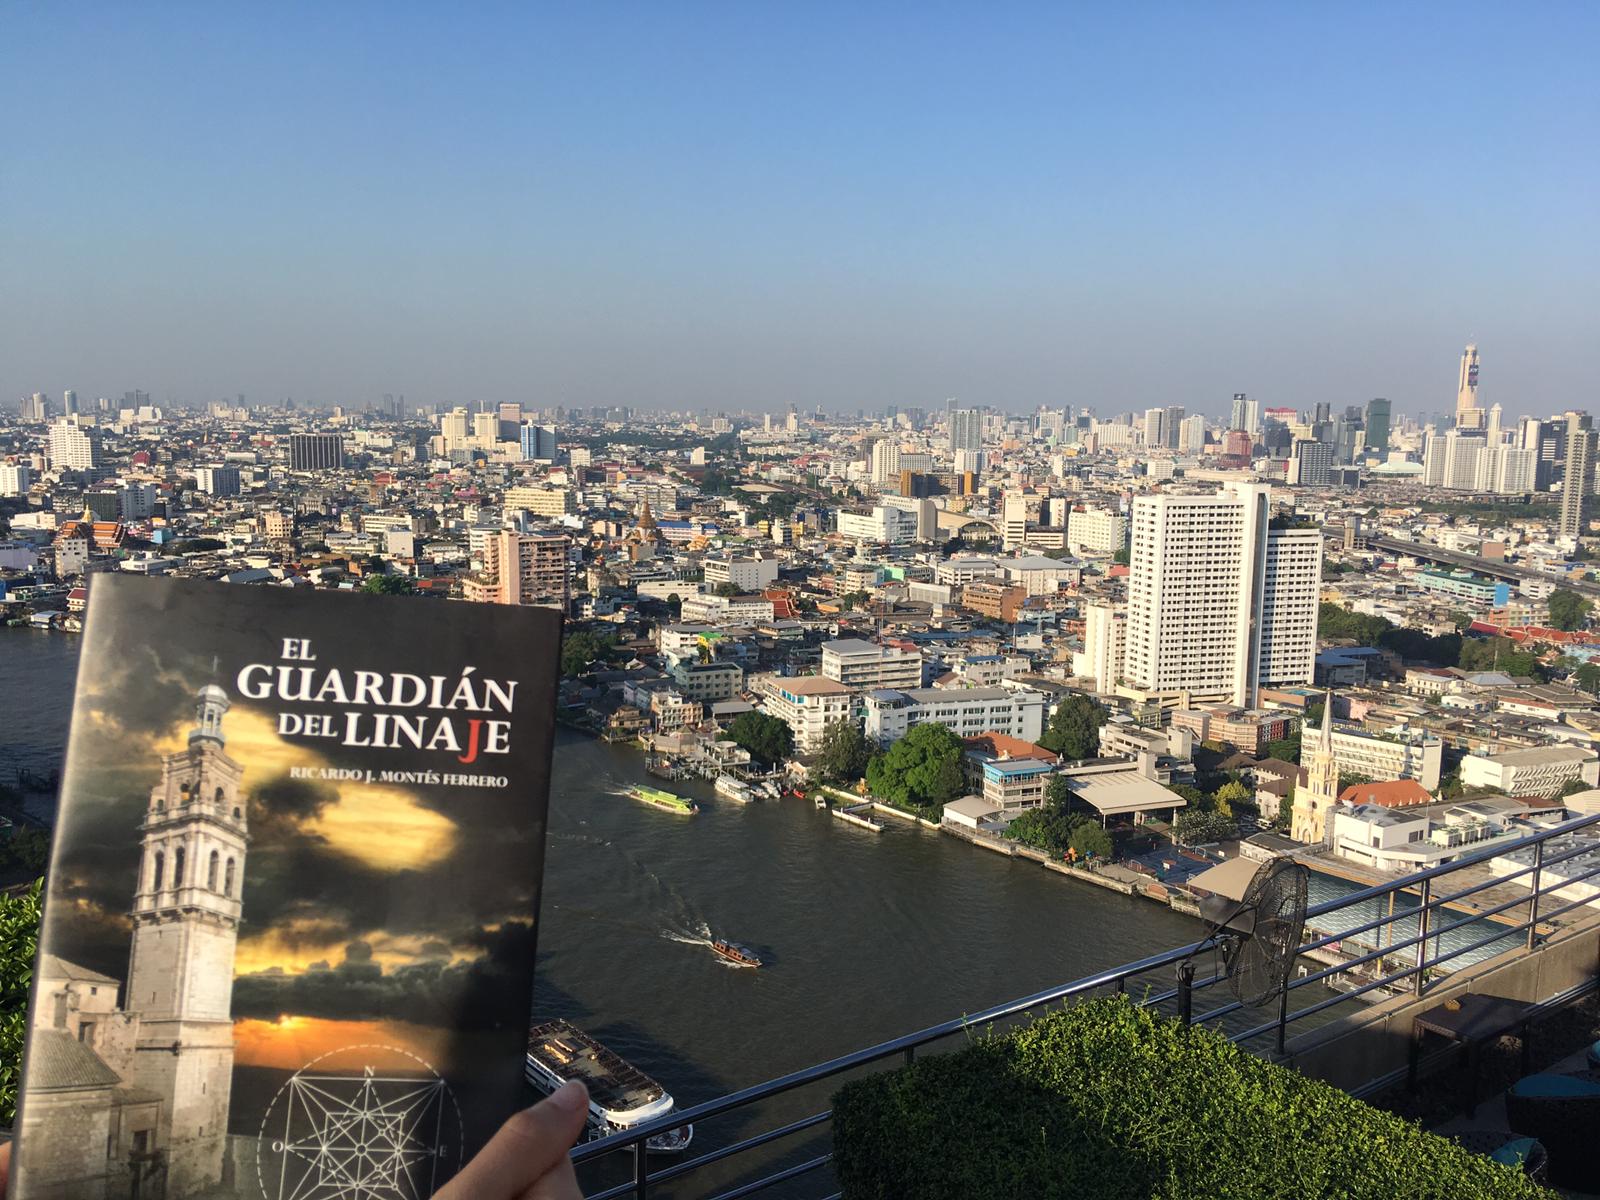 La Novela "El Guardián del Linaje" en Bangkok